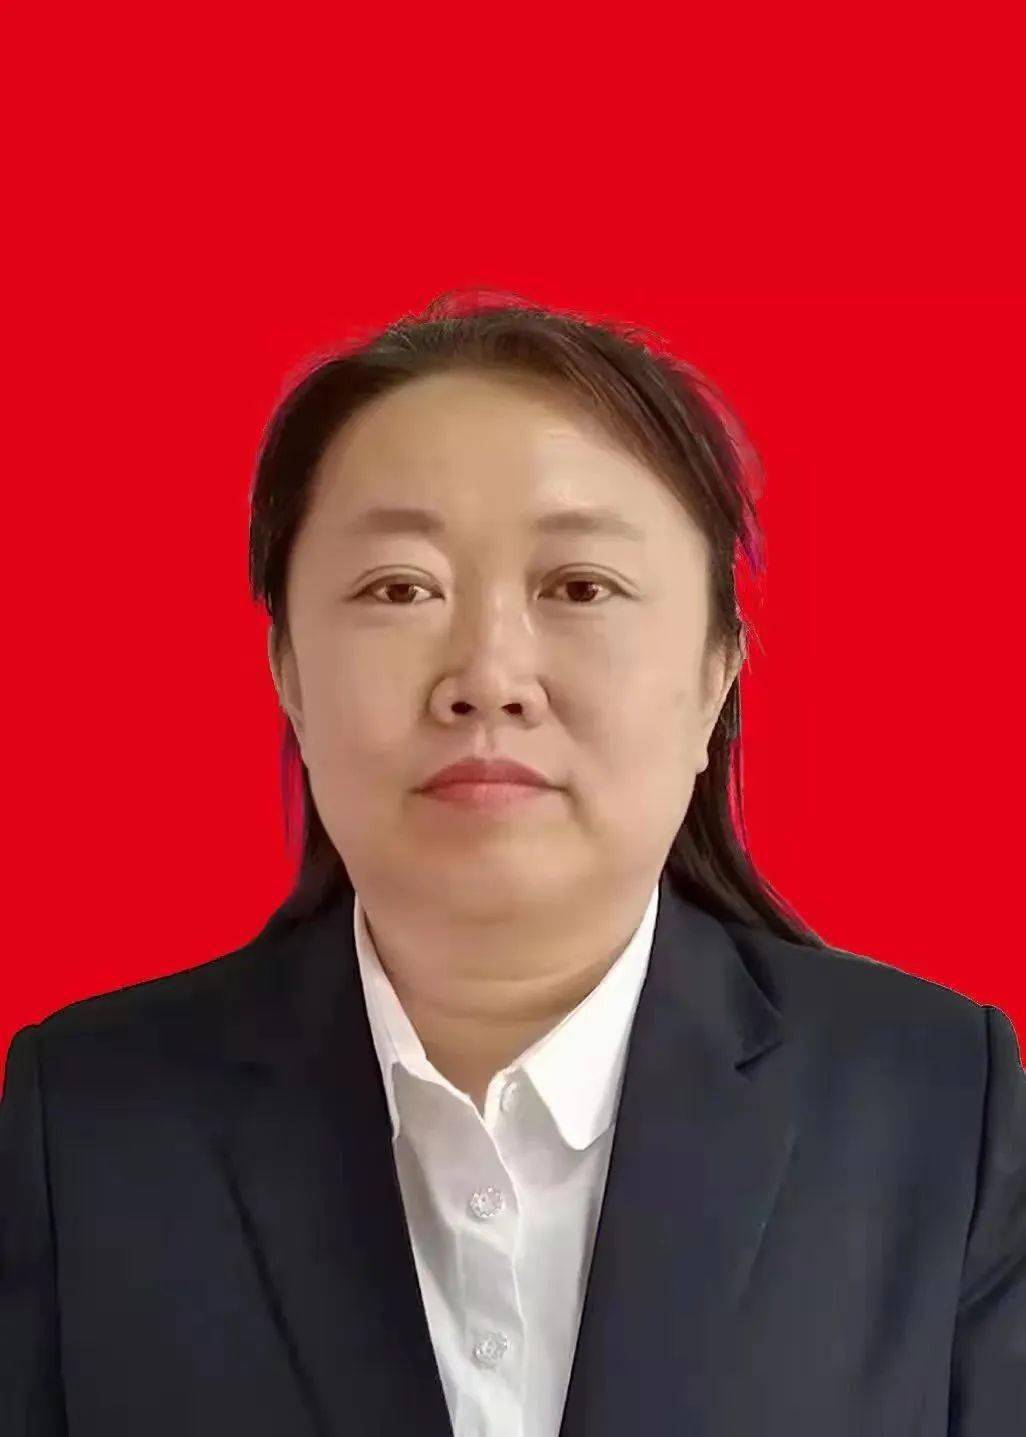 王晓艳王晓艳,女,汉族,1975年8月20日出生,群众,人民小学班主任教师